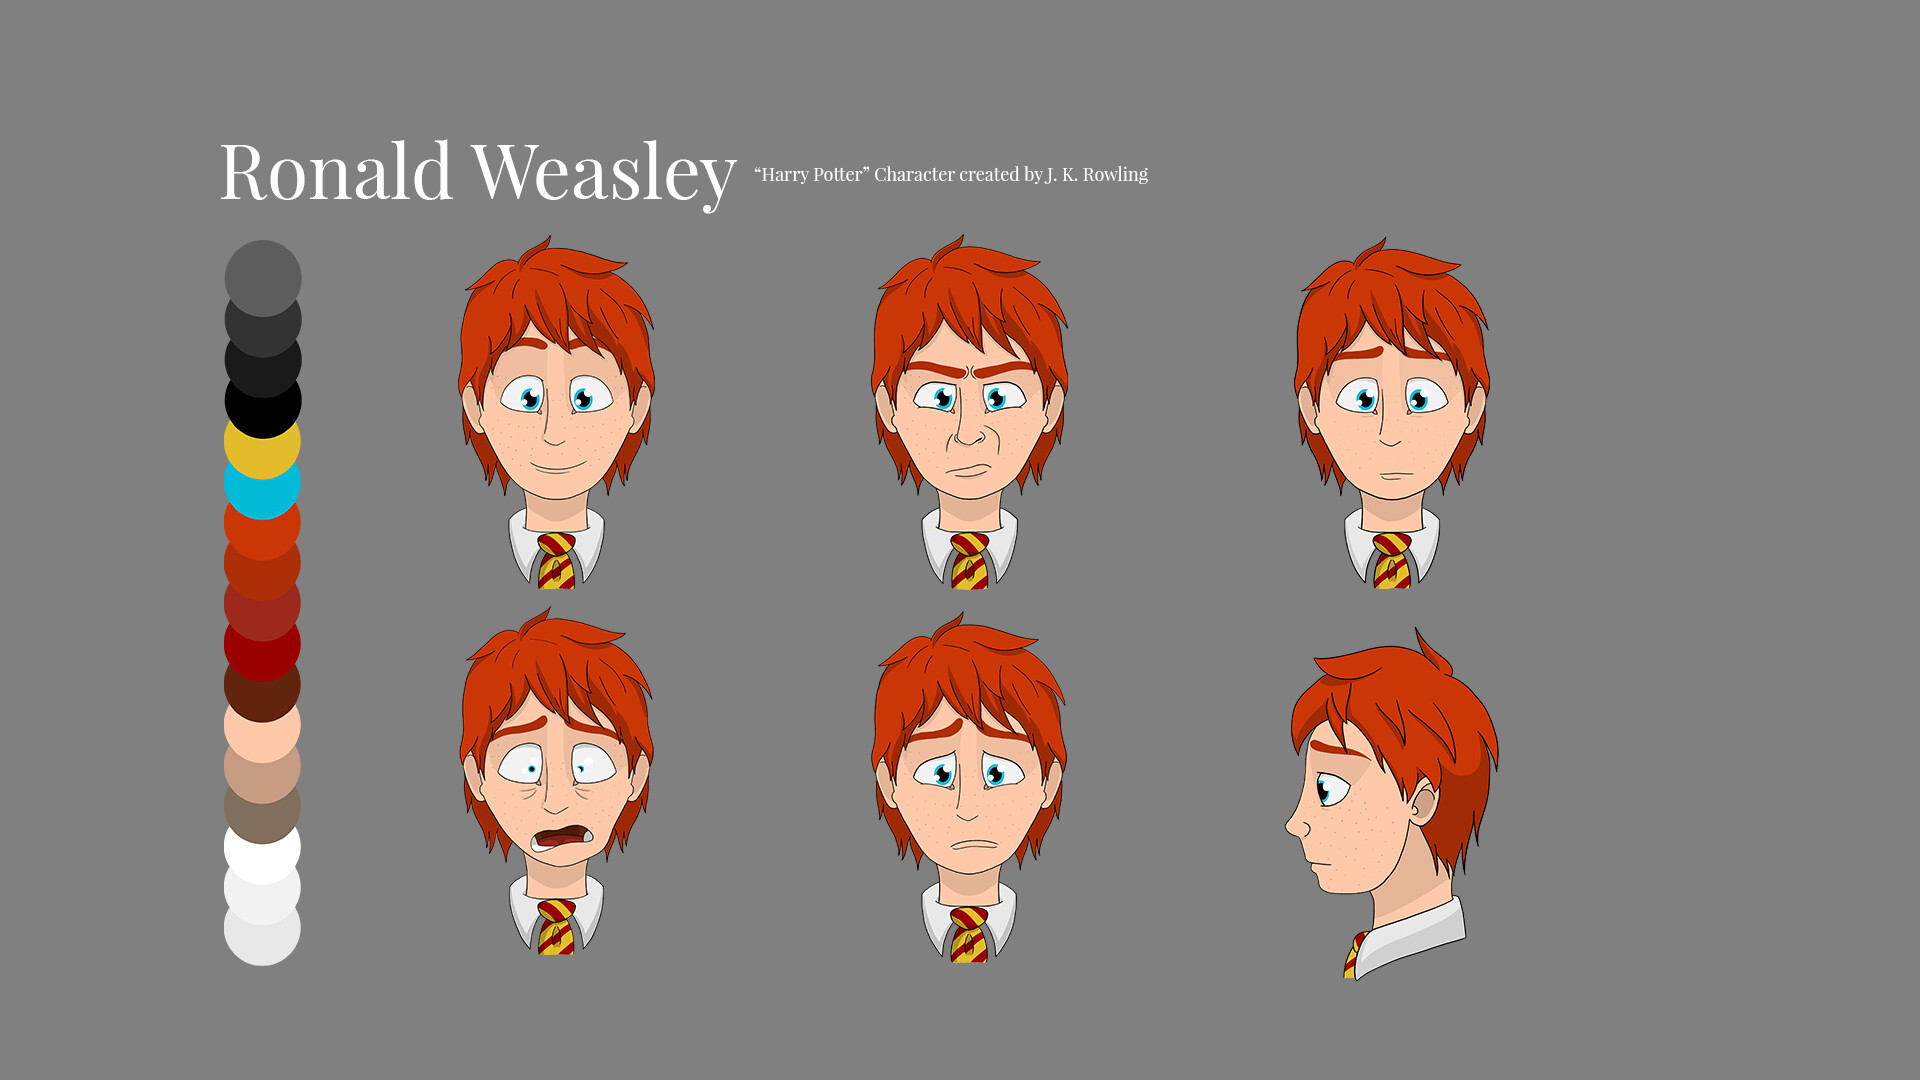 ArtStation - Cartoon Ronald Weasley Character Design